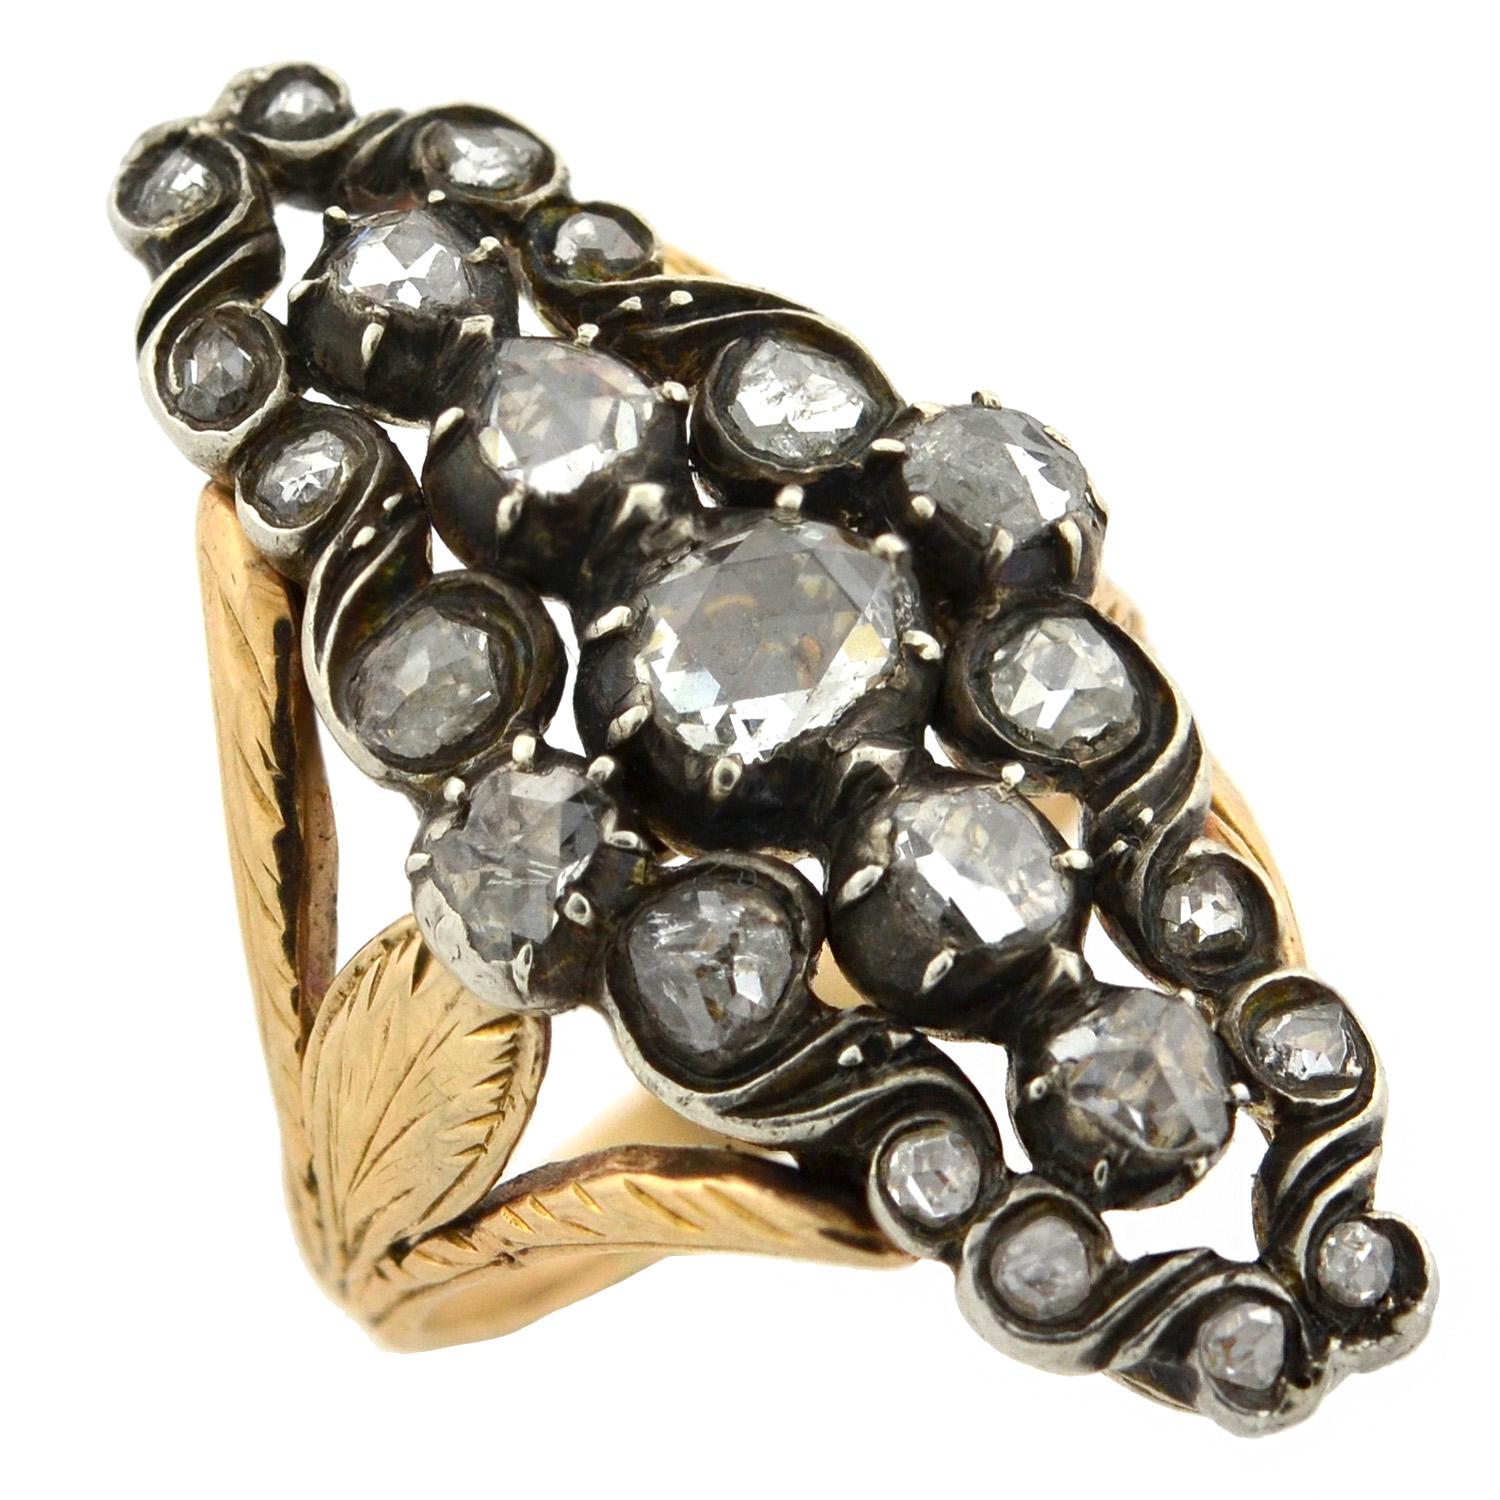 Ein exquisiter Diamant-Navette-Ring aus der viktorianischen Ära (ca. 1850)! Dieser Ring aus gemischtem Metall ist mit funkelnden Diamanten im Rosenschliff besetzt, die das navettenförmige Mittelstück zieren. Die wunderschönen Steine liegen in einer